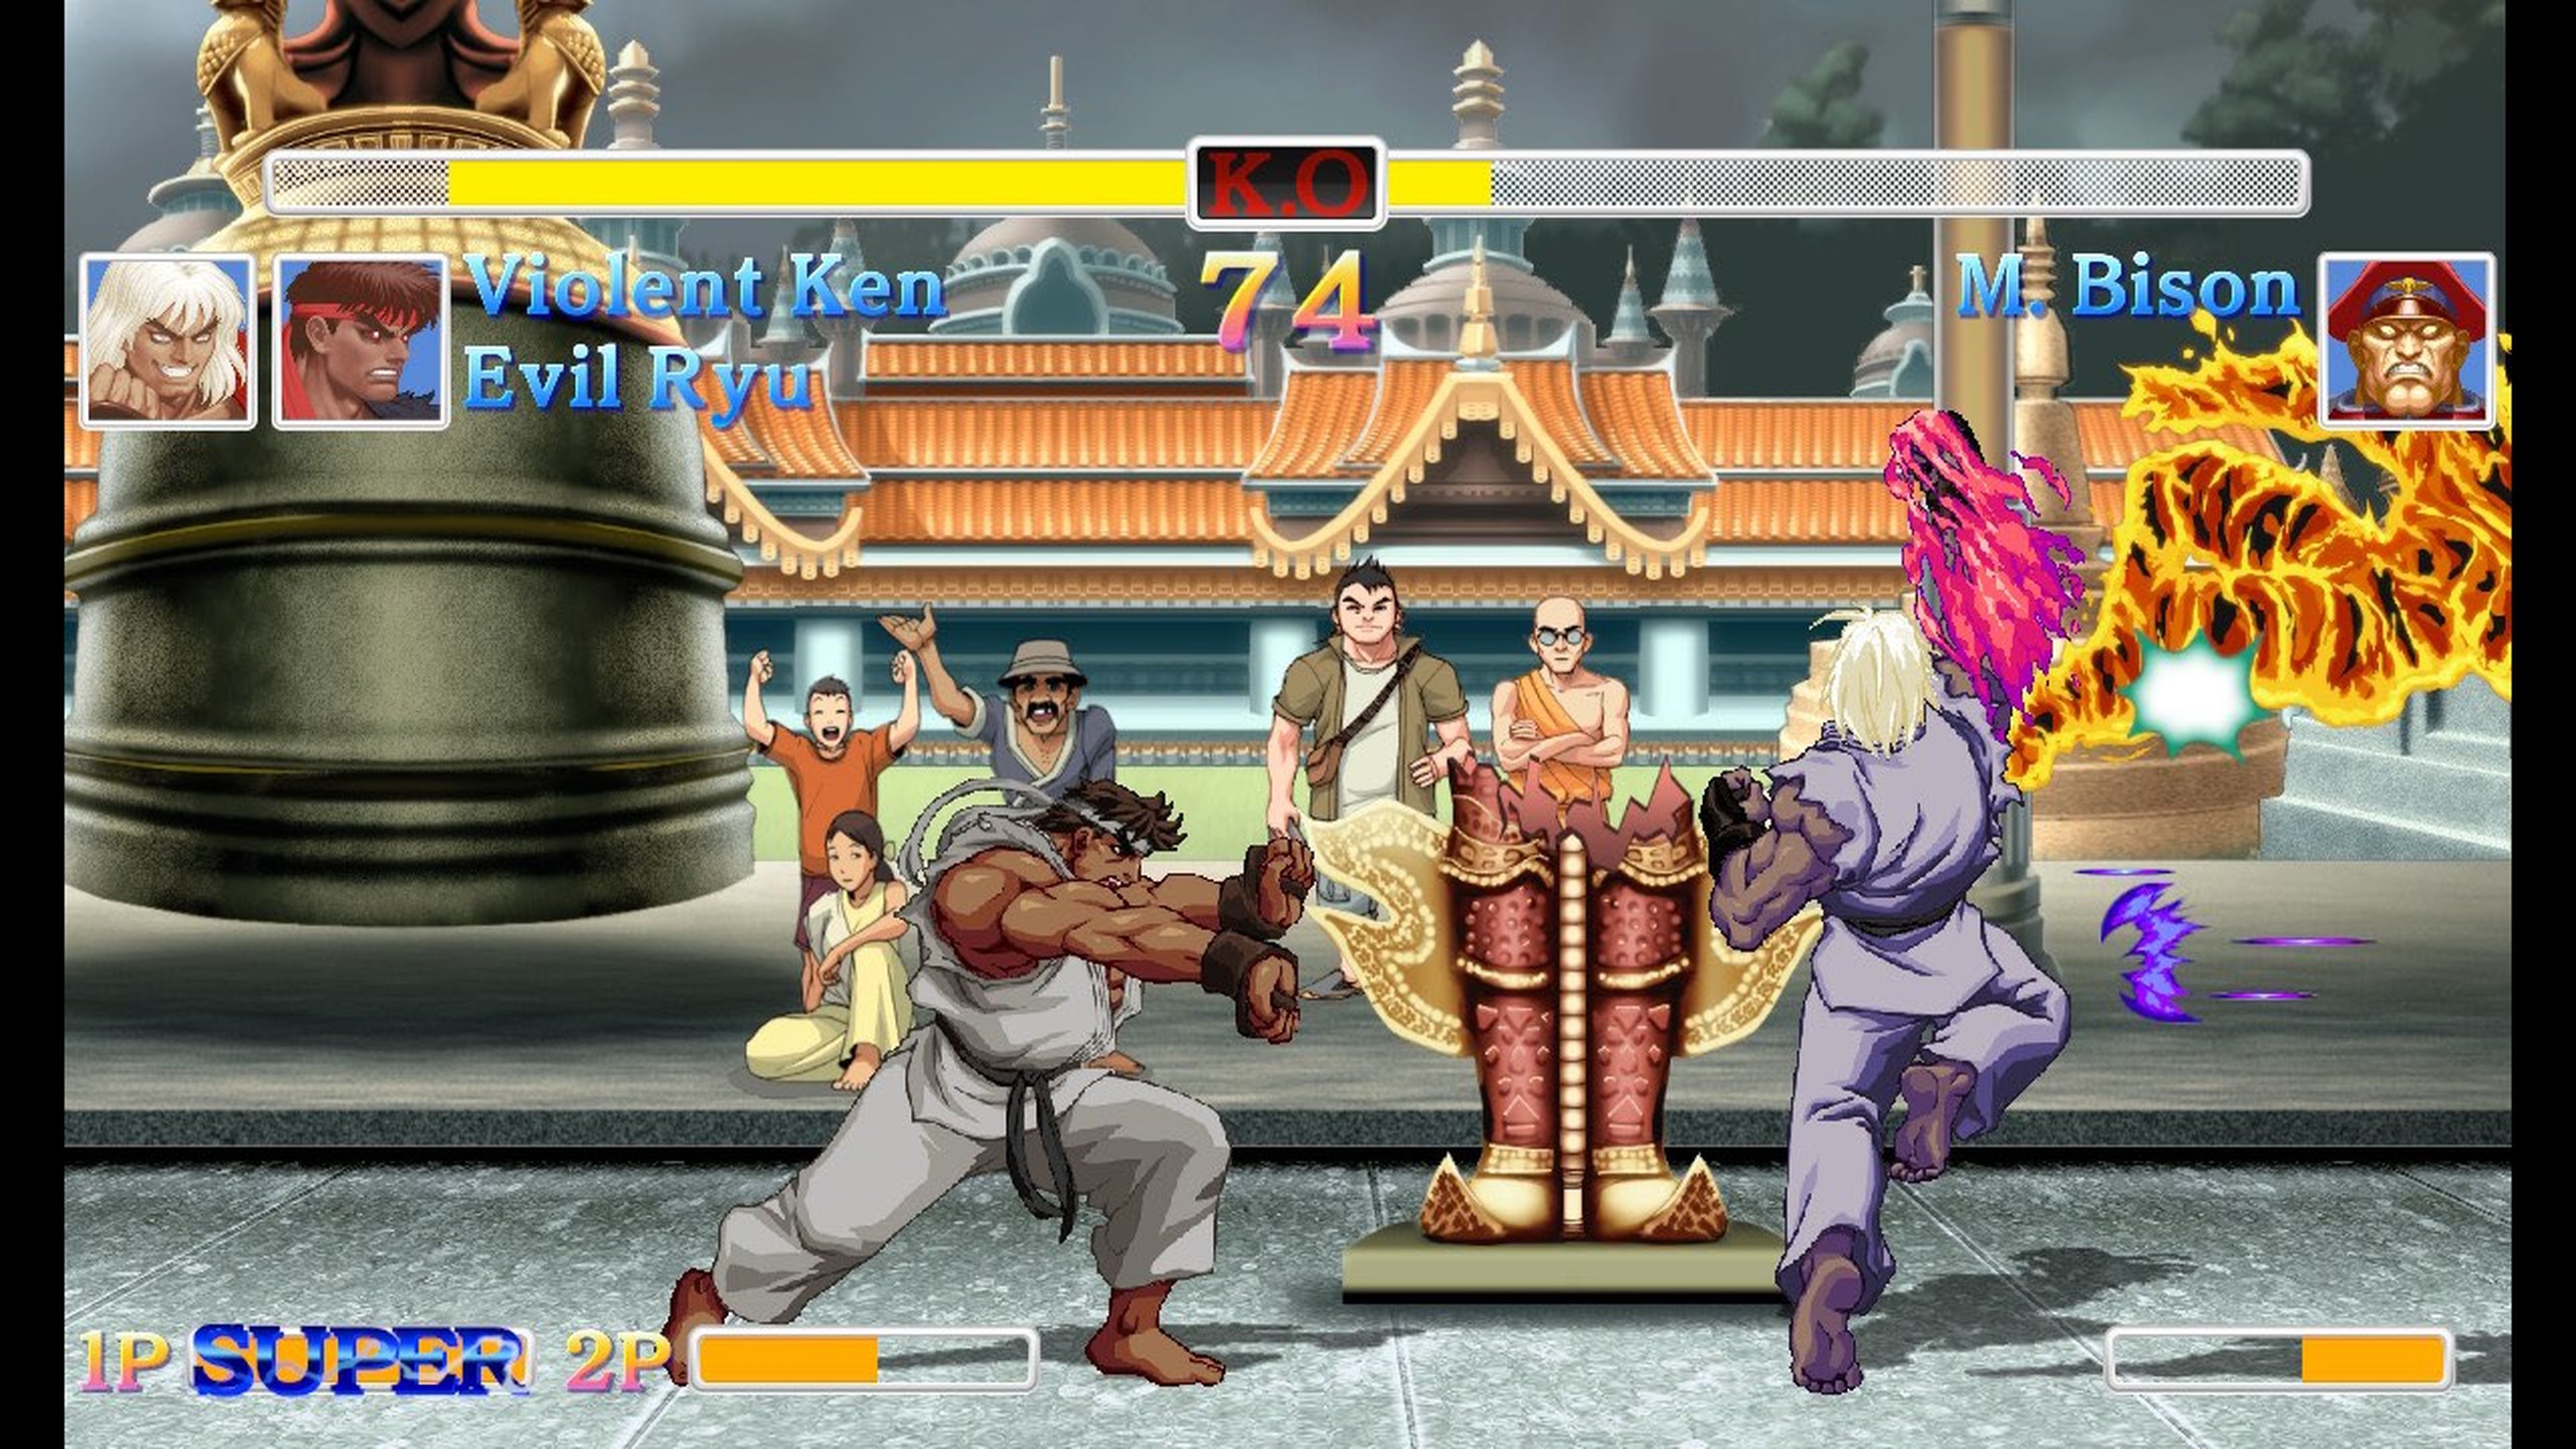 Ultra Street Fighter II llega a Switch introduce nuevos personajes, nuevos modos, gráficos HD (y también los originales pixelados)...